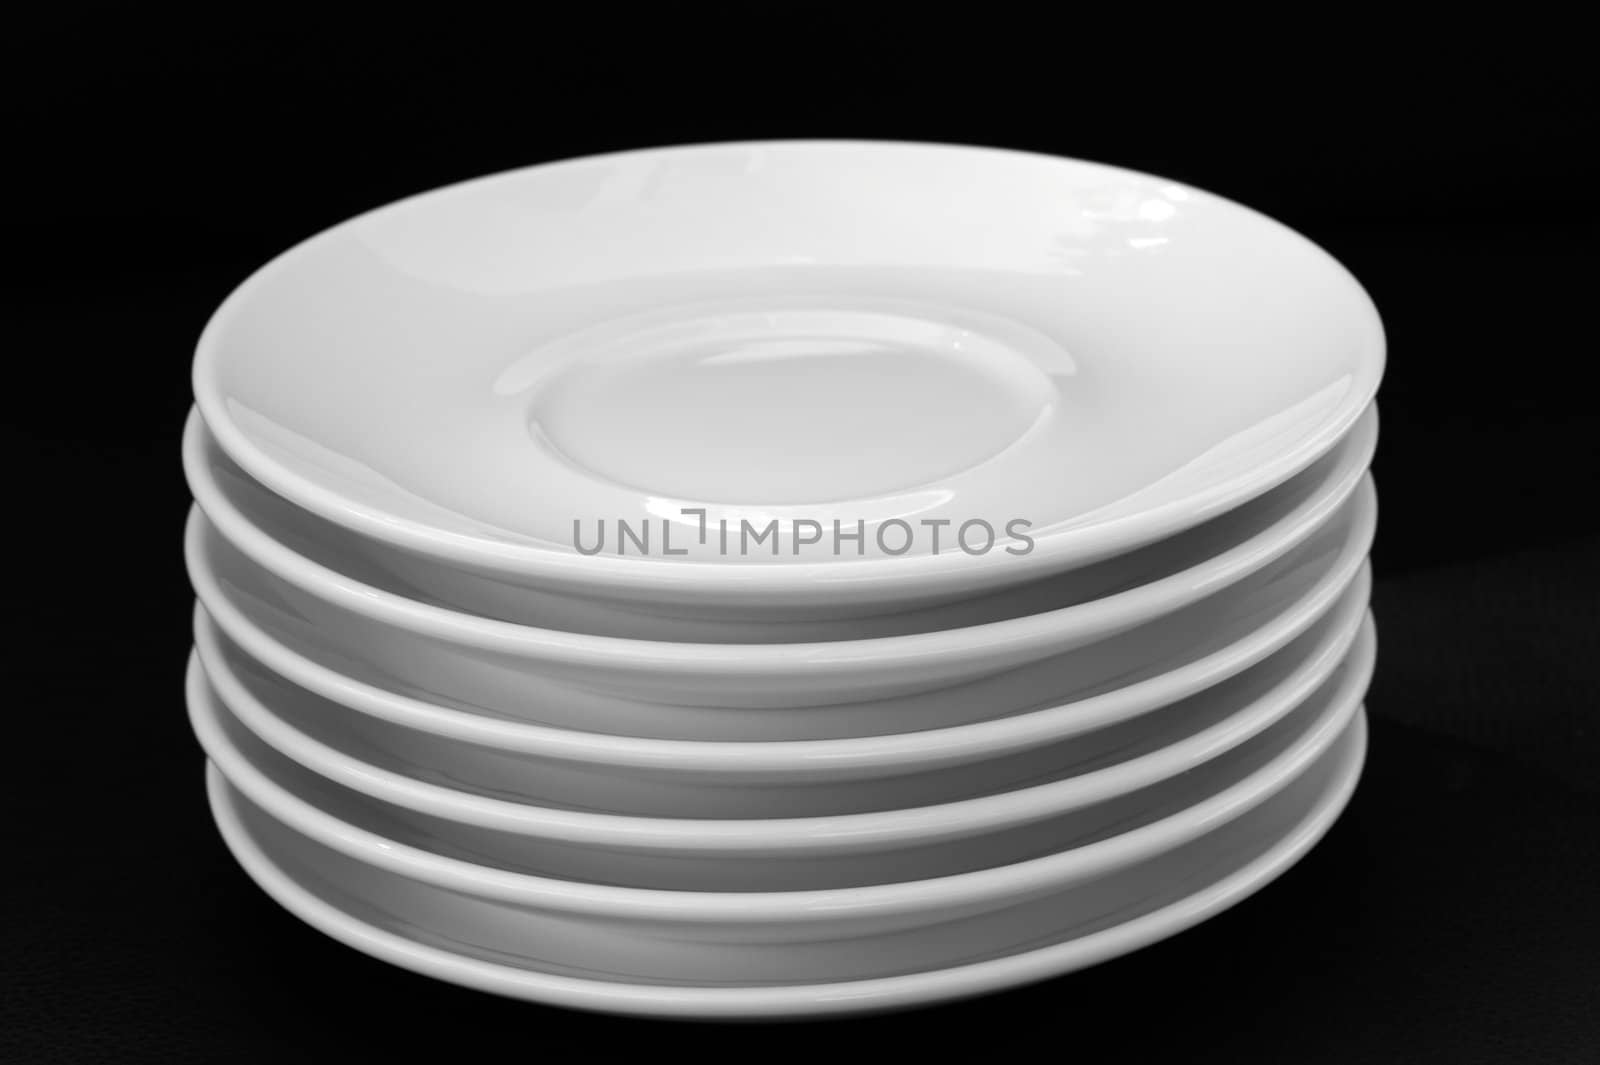 White plates isolated on black background